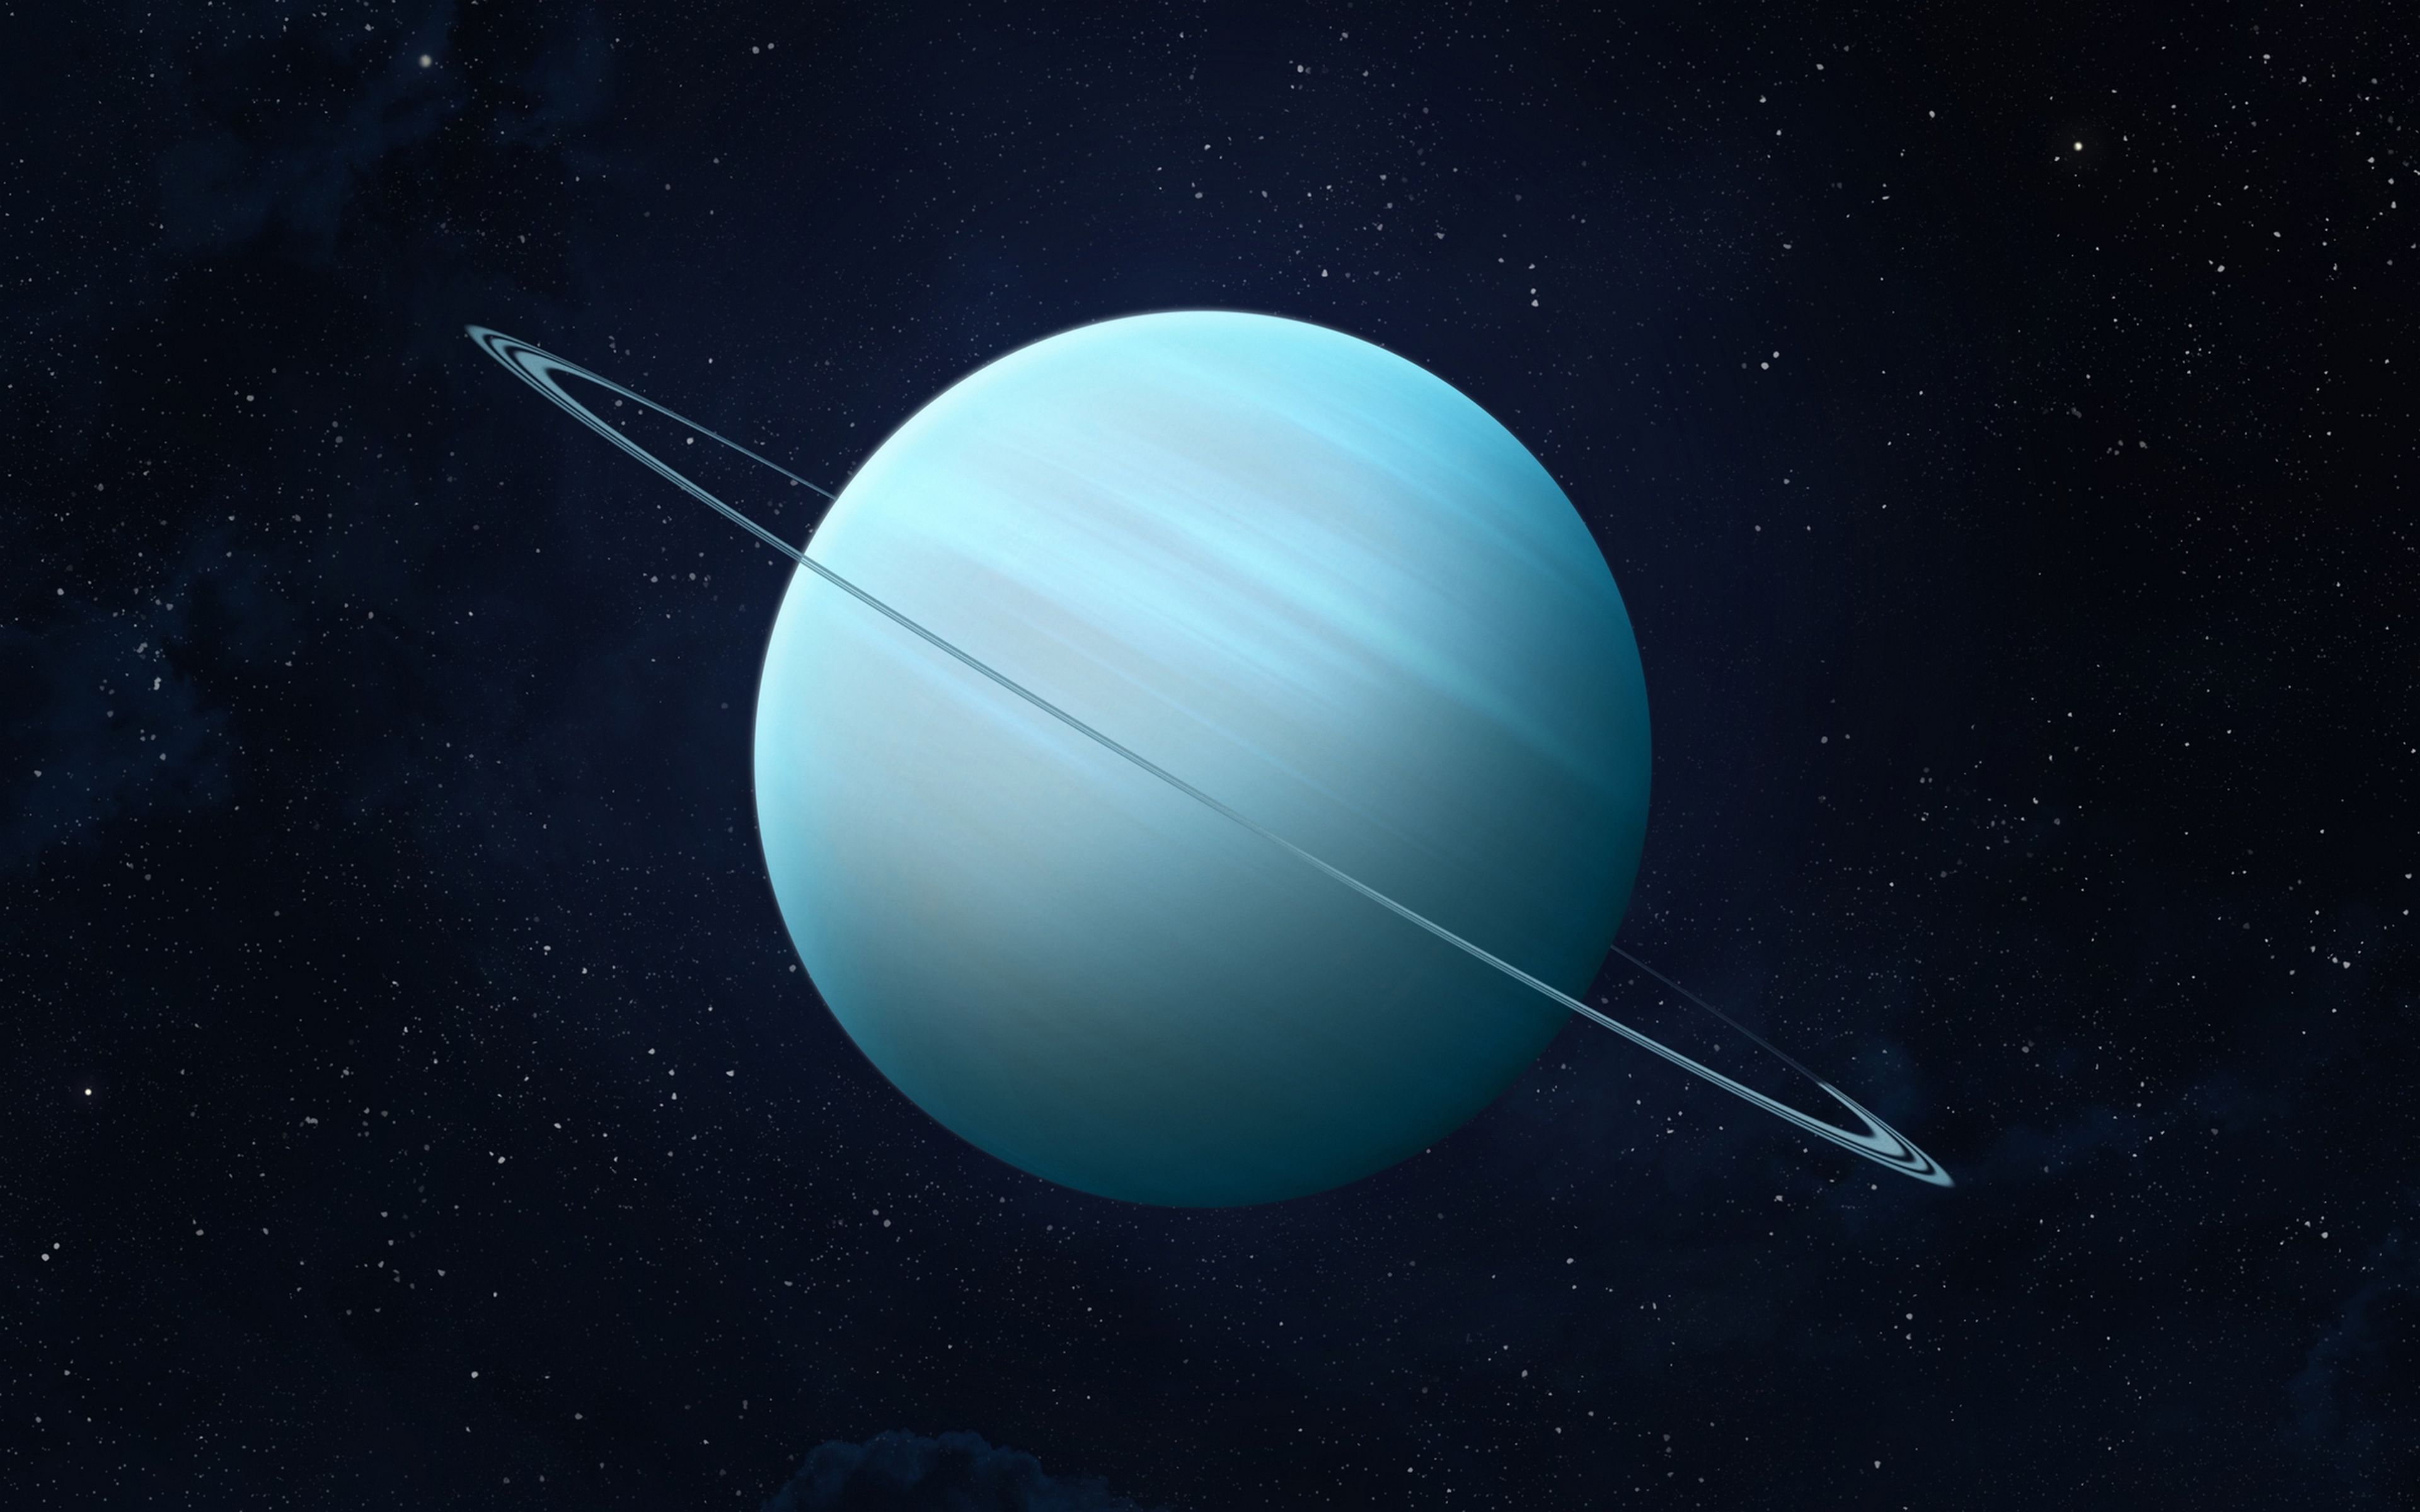 La NASA pide nombres para su próxima misión a Urano, y ya te puedes imaginar las respuestas...